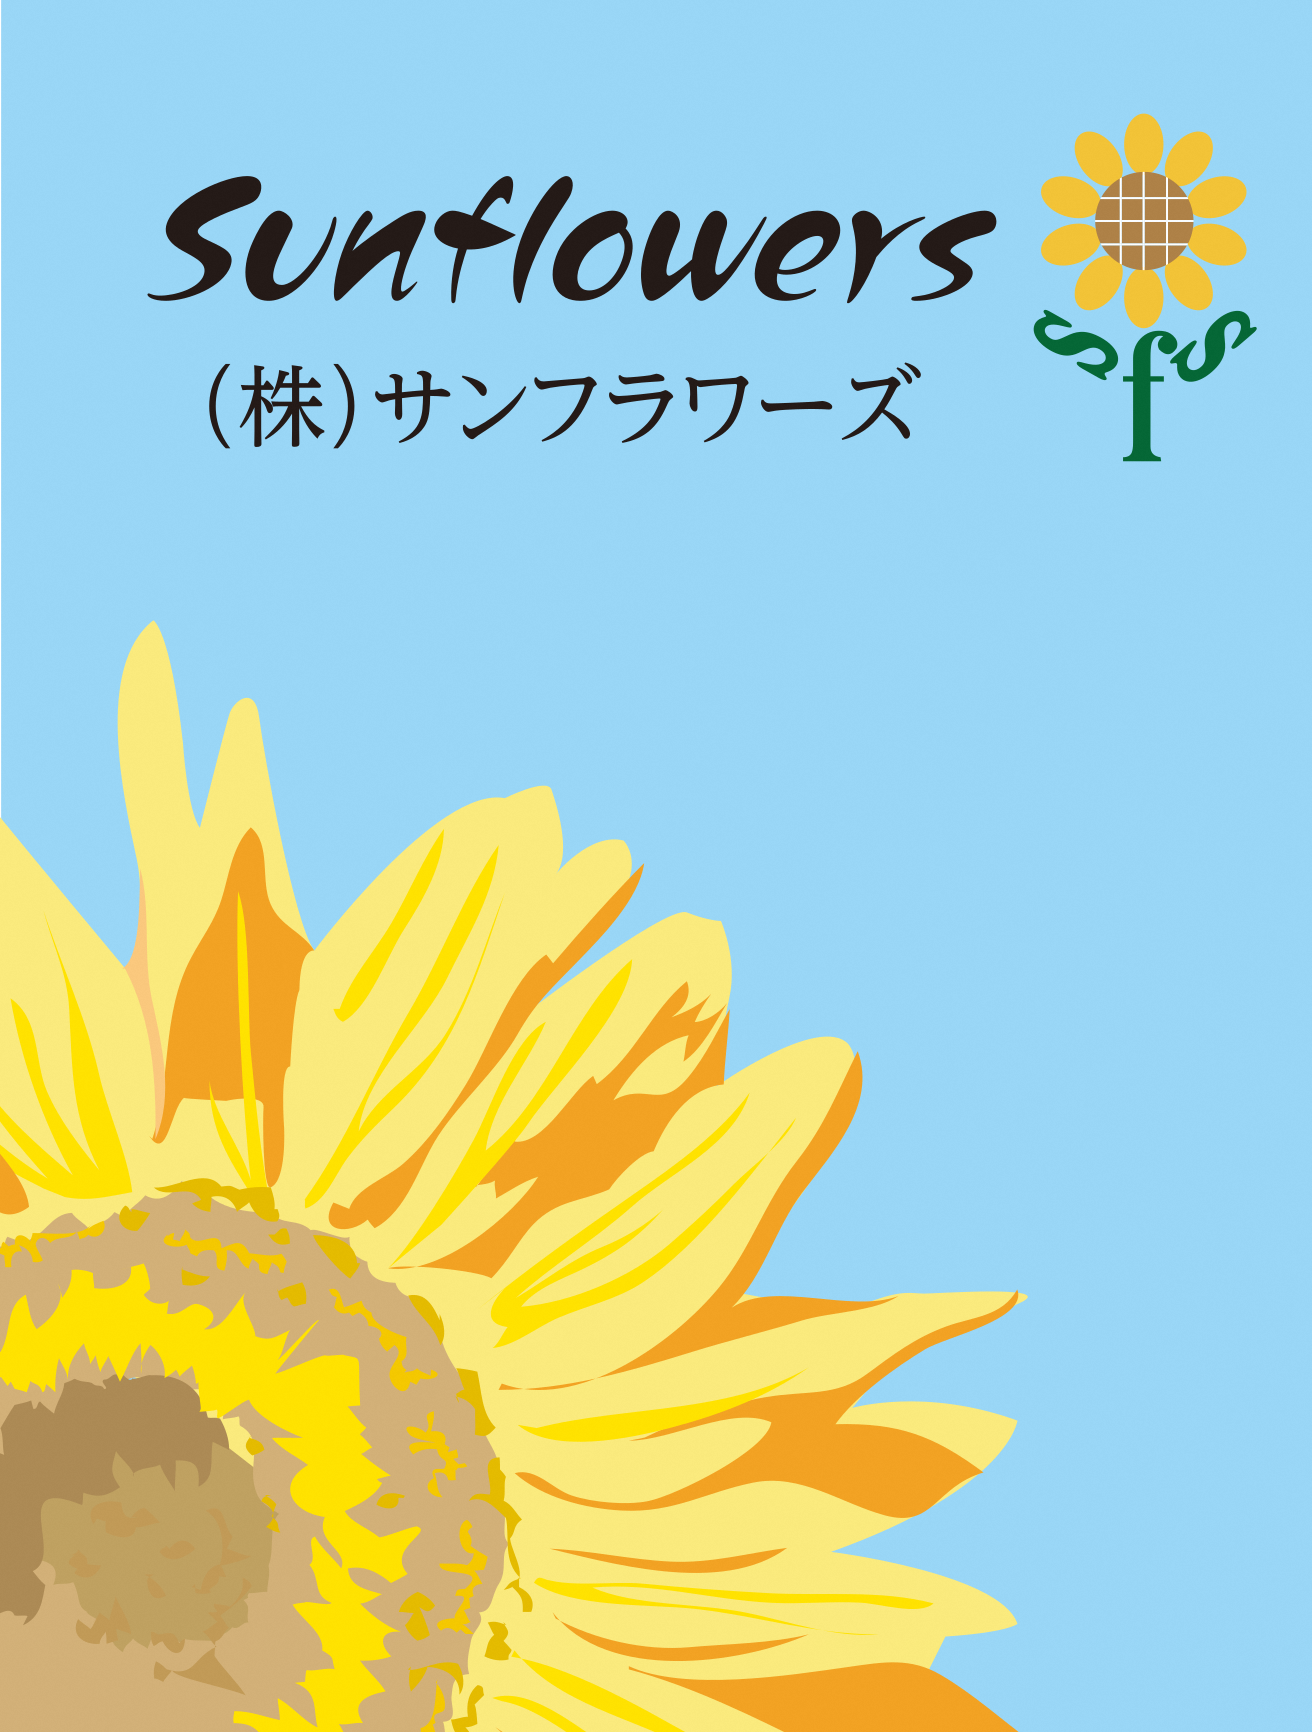 (株)Sunflowers